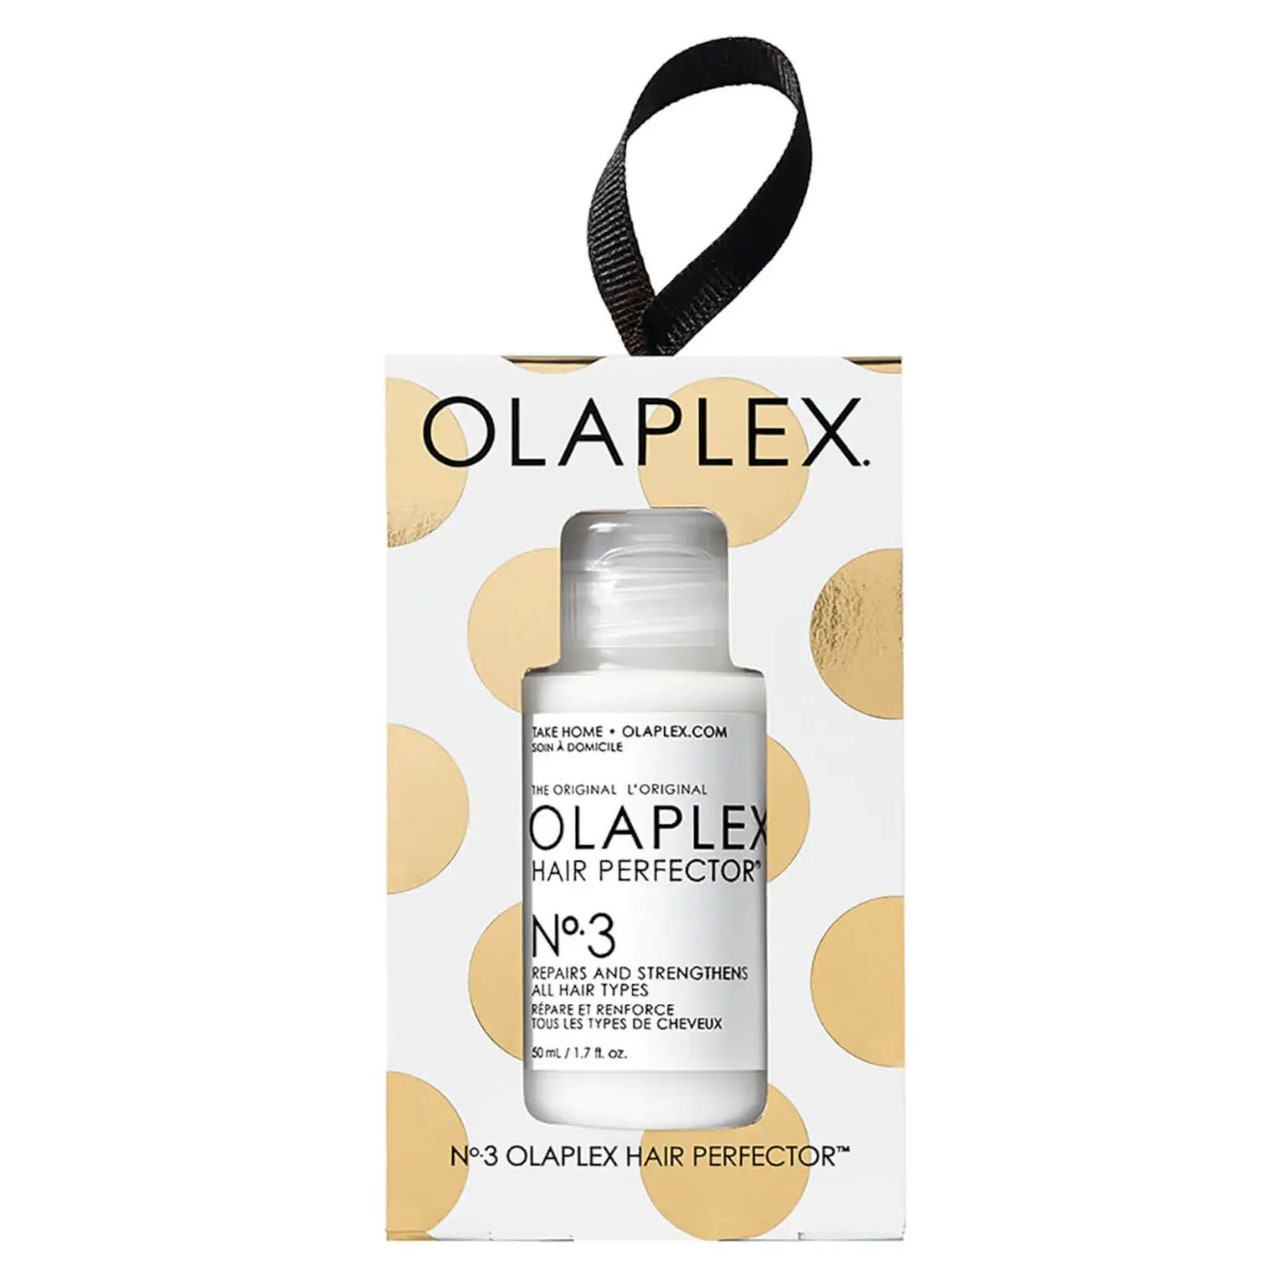 Olaplex No.3 Holiday Ornament Hair Perfector in gold-weiß gepunkteter Box auf weißem Hintergrund